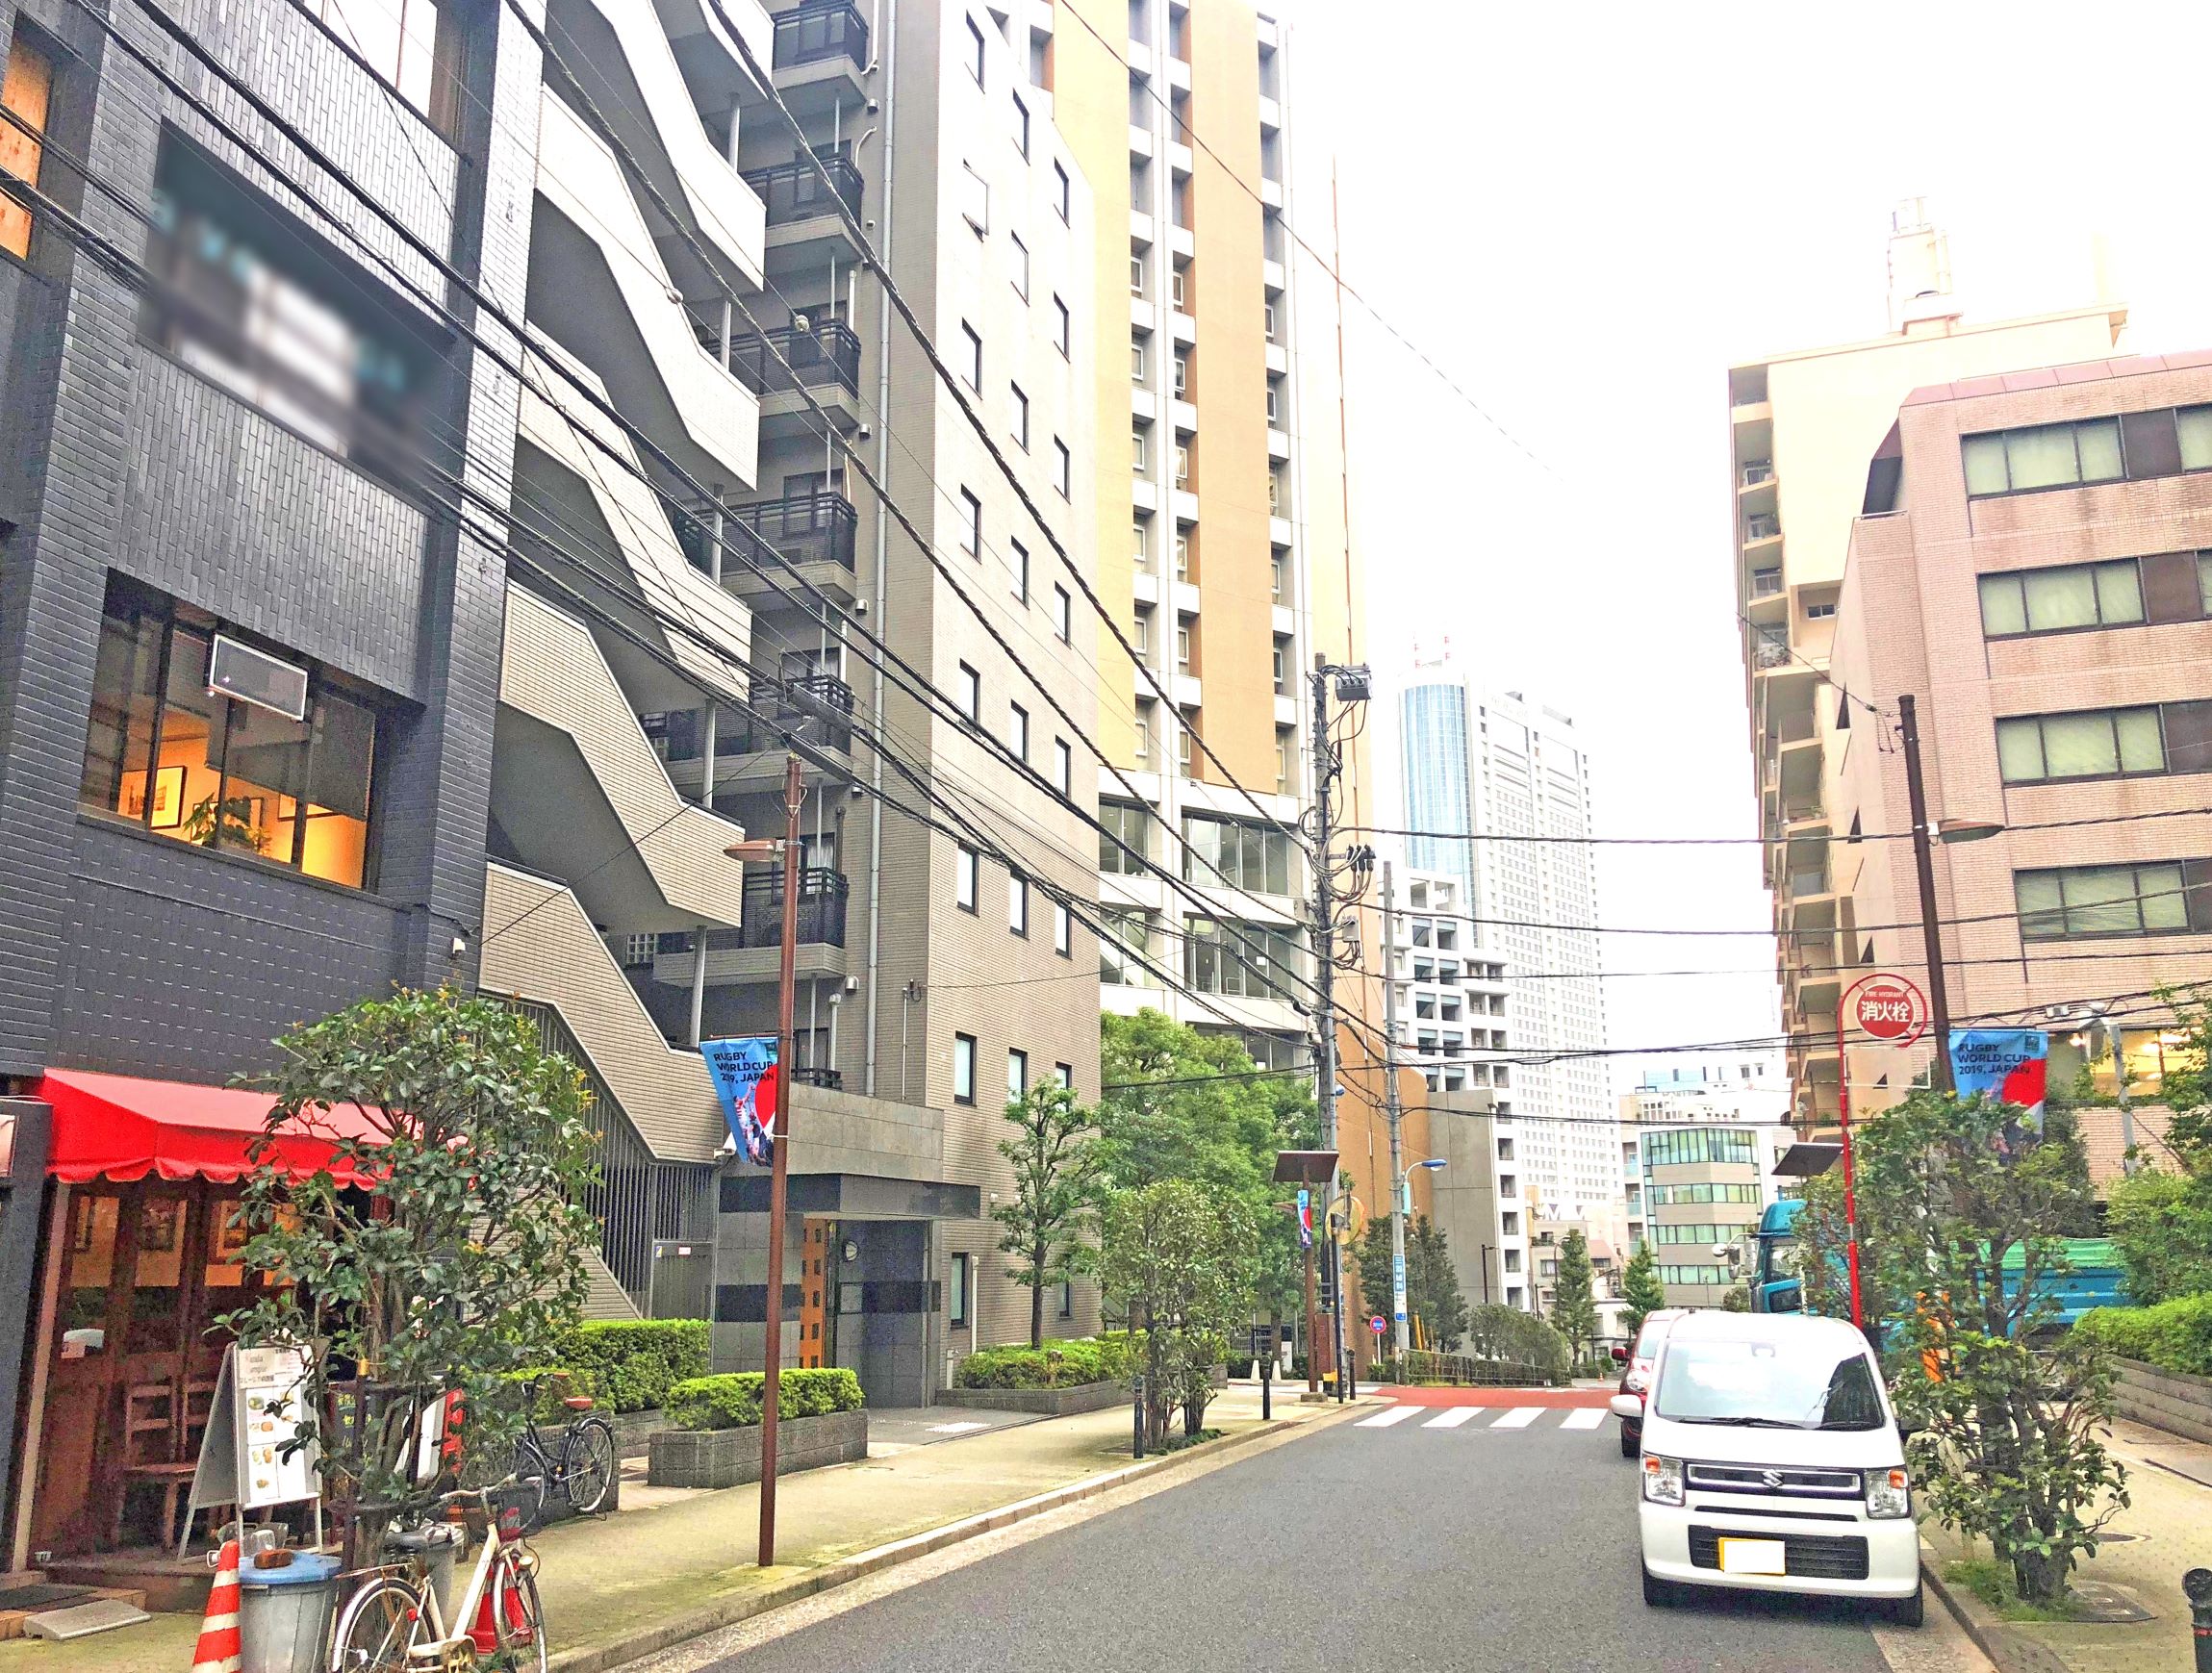 周辺には大学や専門学校もあり、上質で落ち着いた雰囲気の『本郷三丁目』。
東京メトロ丸の内線『本郷三丁目』から徒歩4分の物件です。